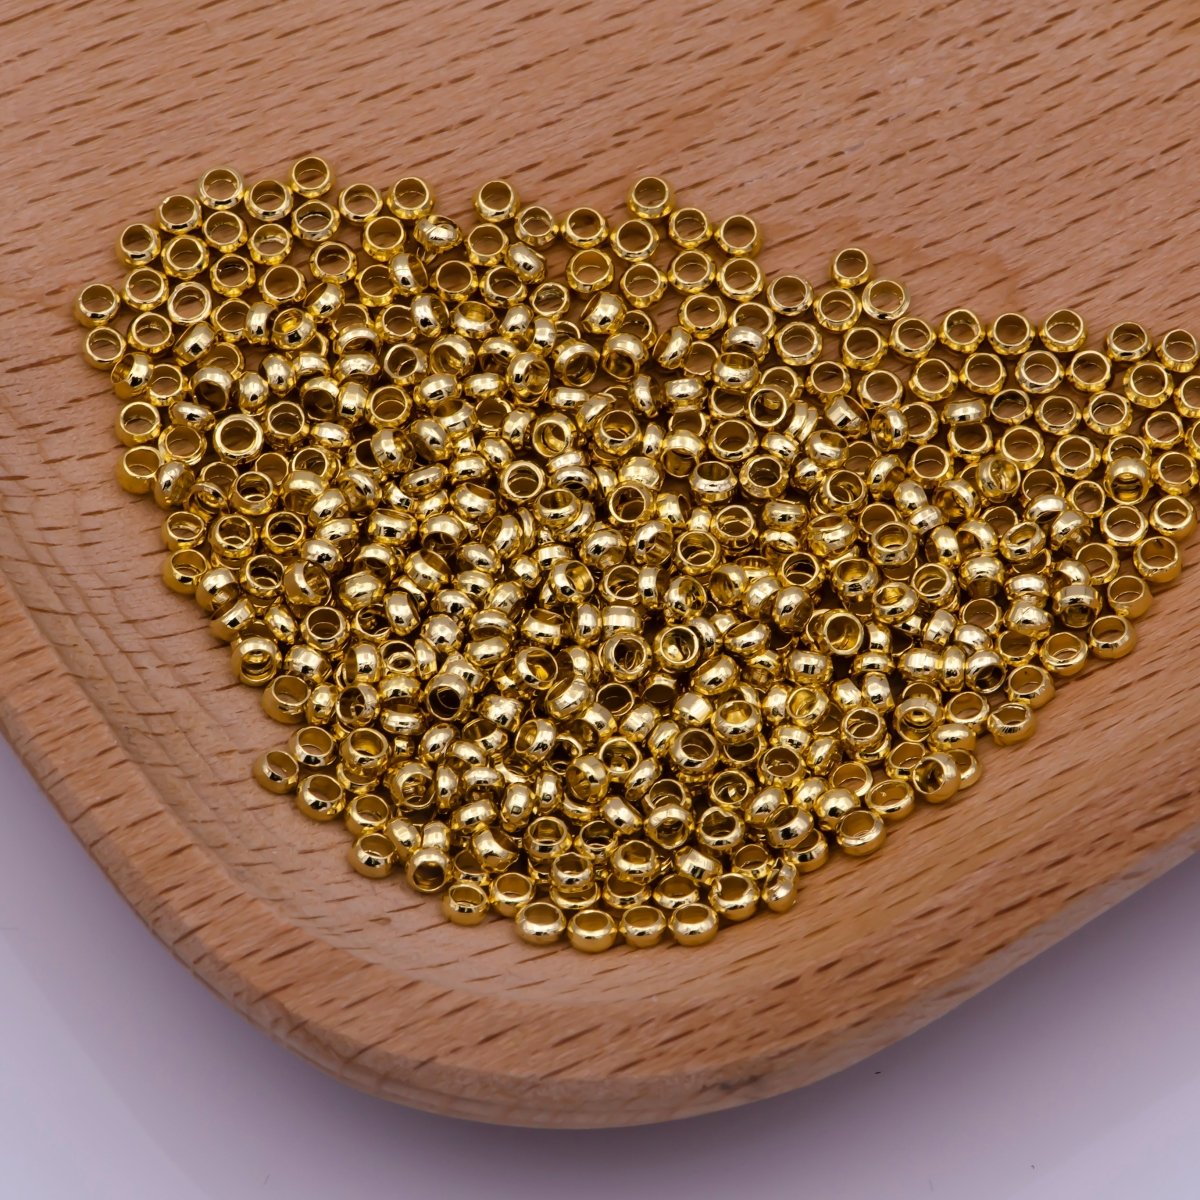 1.5mm, 2mm, 2.5mm 24k Gold Filled Crimp Beads, Crimp covers, Spacer Stopper Beads K-206 L-540 L-541 - DLUXCA